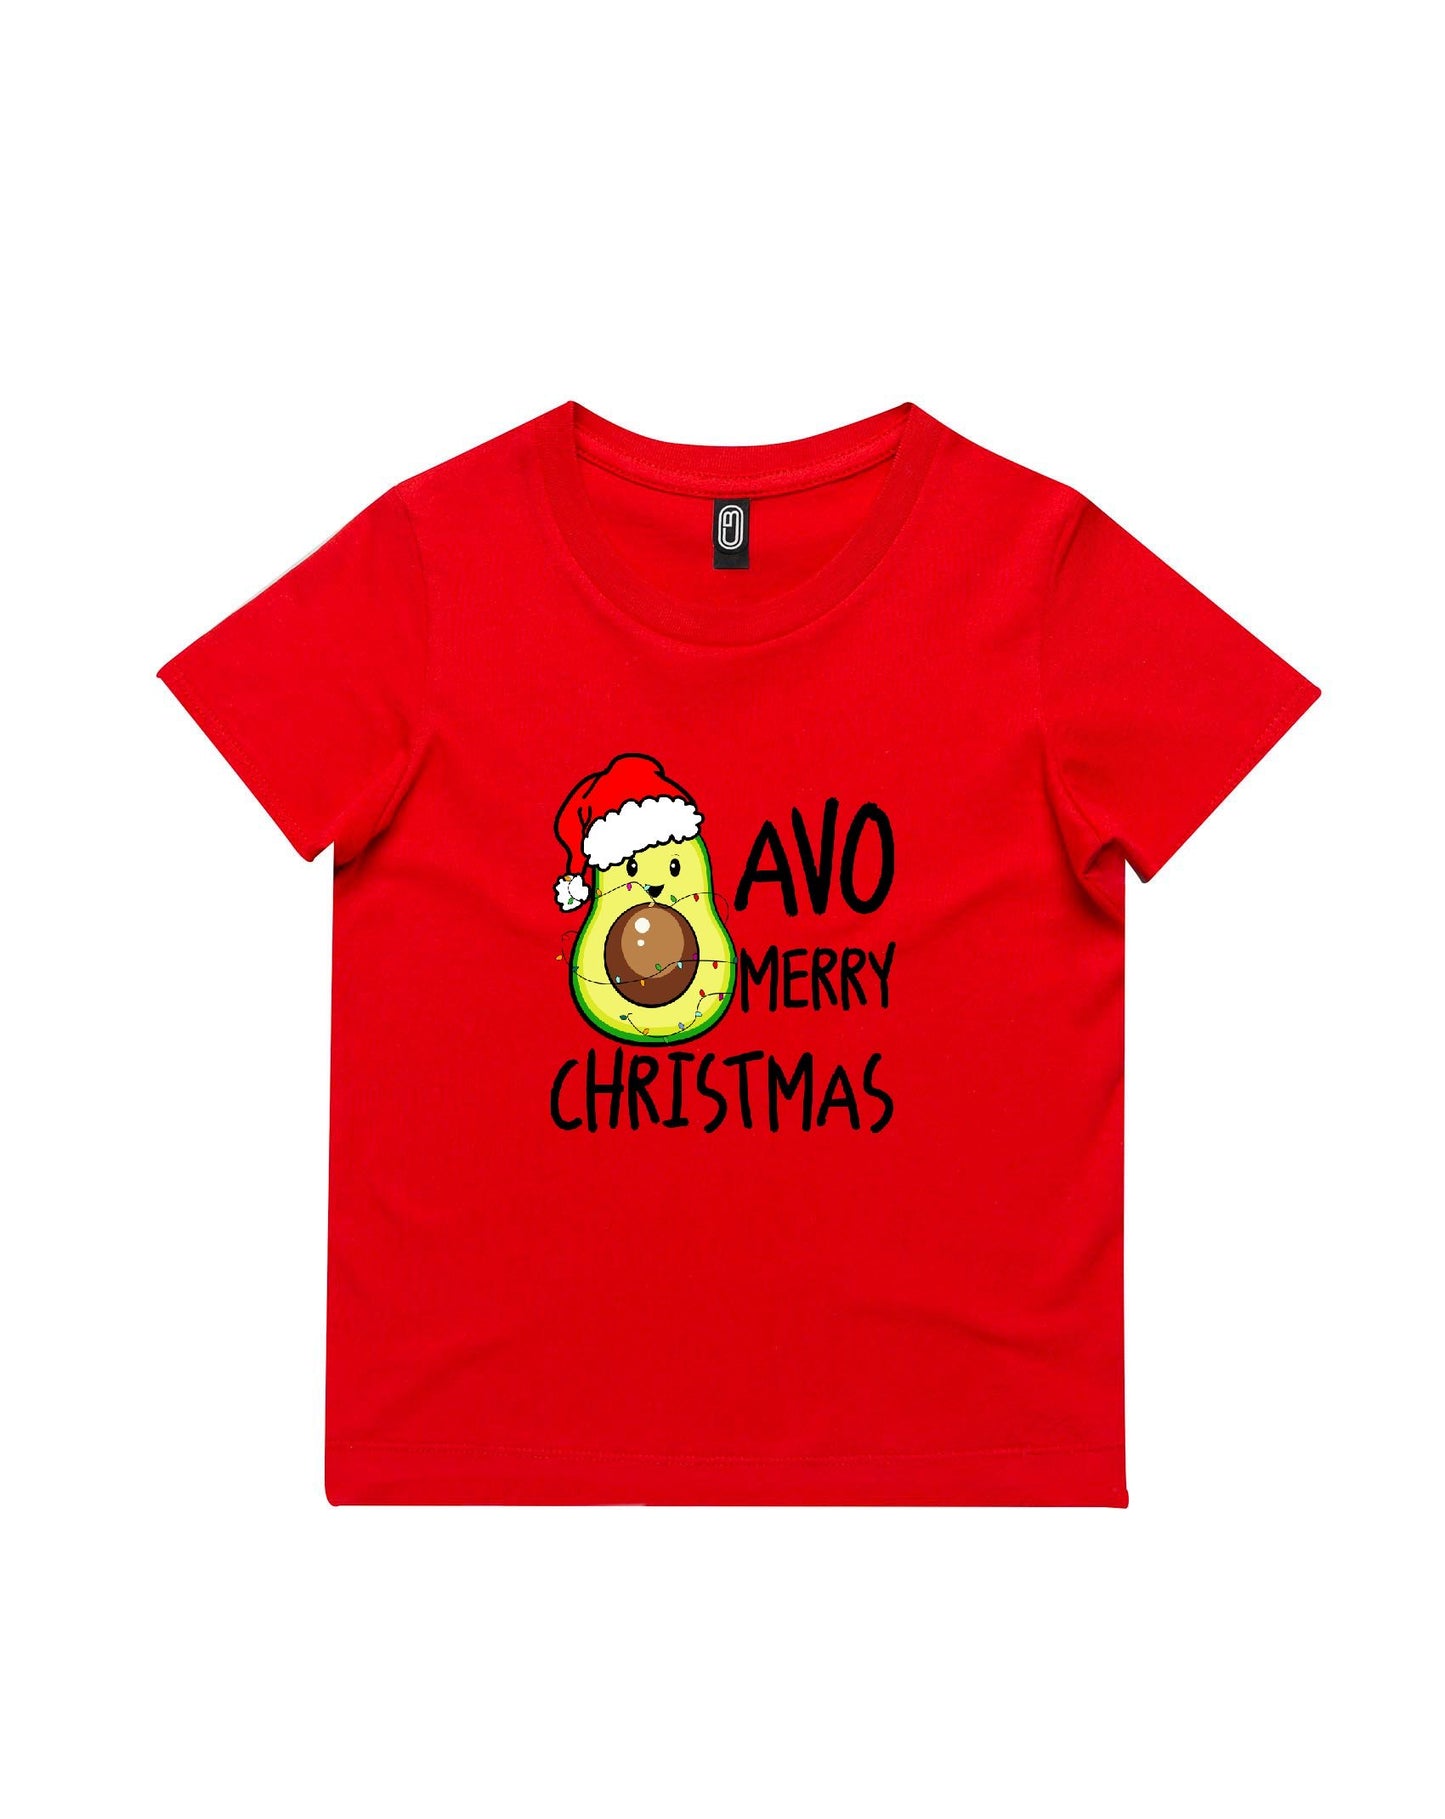 Avo Merry Christmas Kids T-Shirt - Youth 8-14